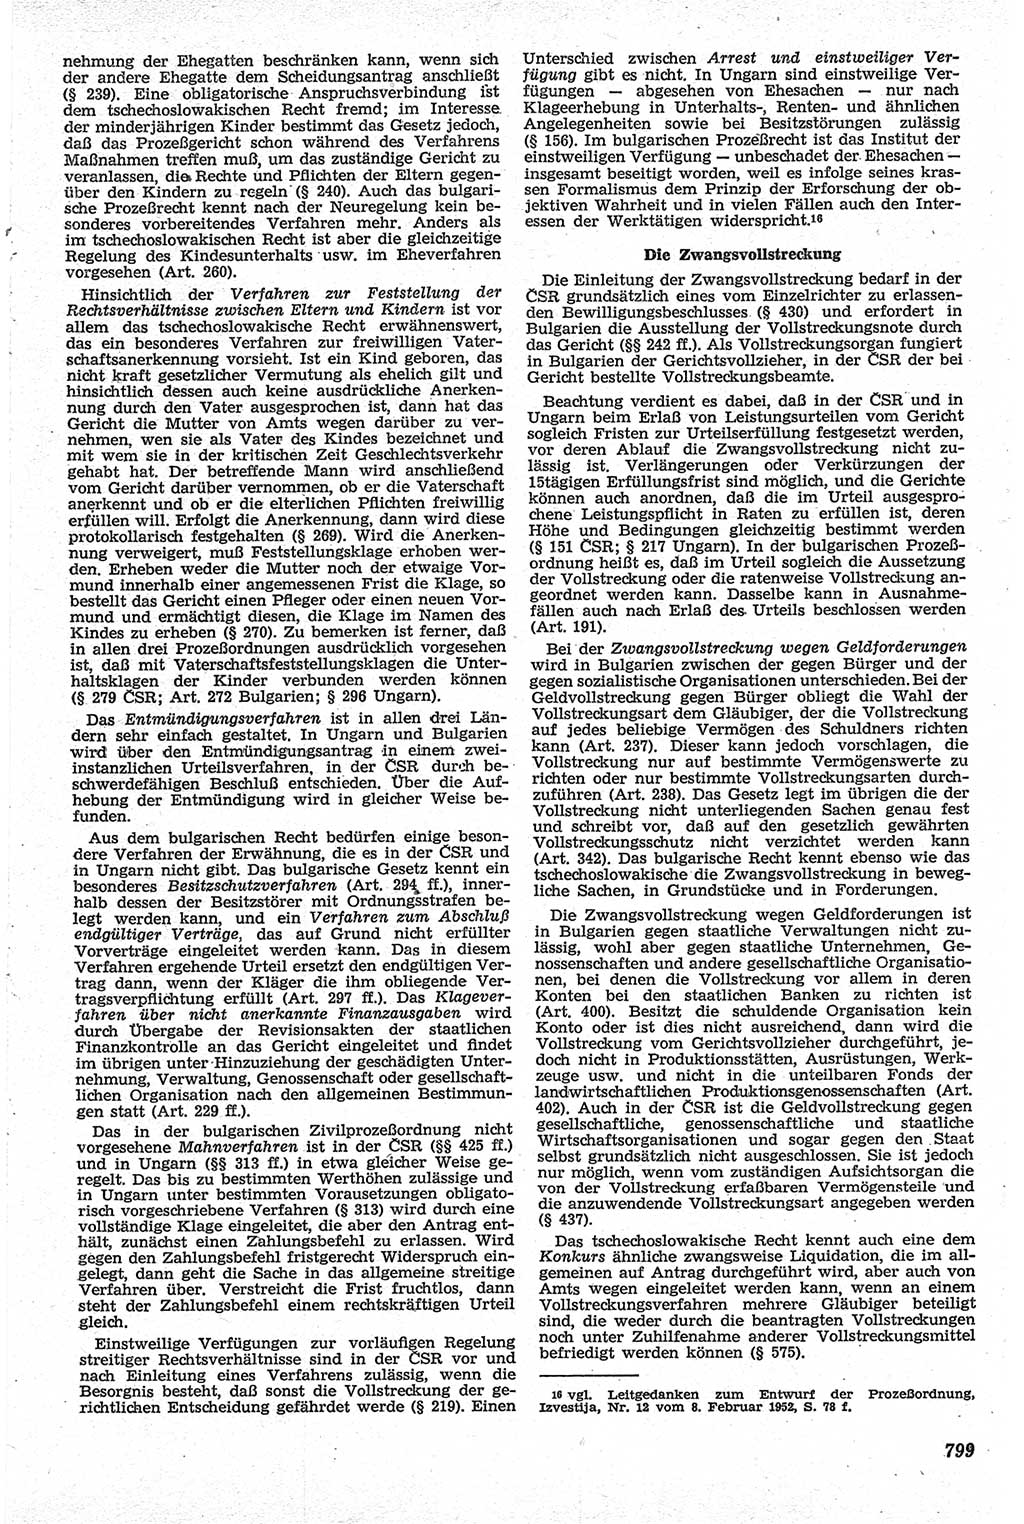 Neue Justiz (NJ), Zeitschrift für Recht und Rechtswissenschaft [Deutsche Demokratische Republik (DDR)], 13. Jahrgang 1959, Seite 799 (NJ DDR 1959, S. 799)